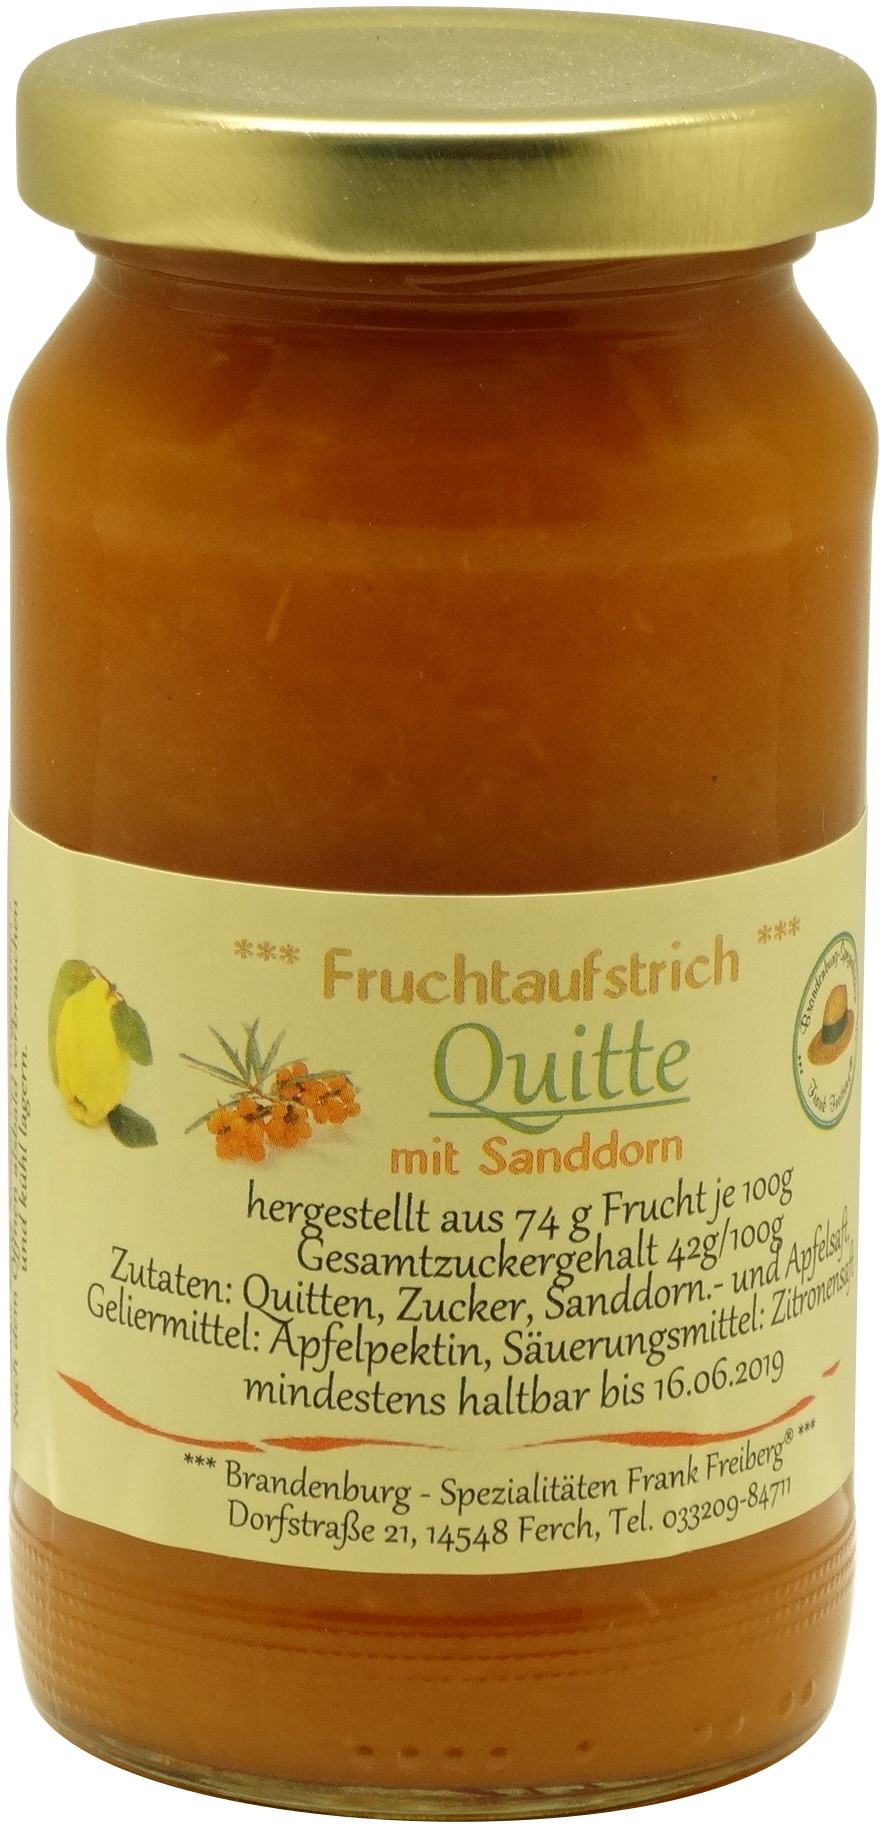 Fruchtaufstrich Quitte mit Sanddorn | oelix.de - Öle mit Geschmack